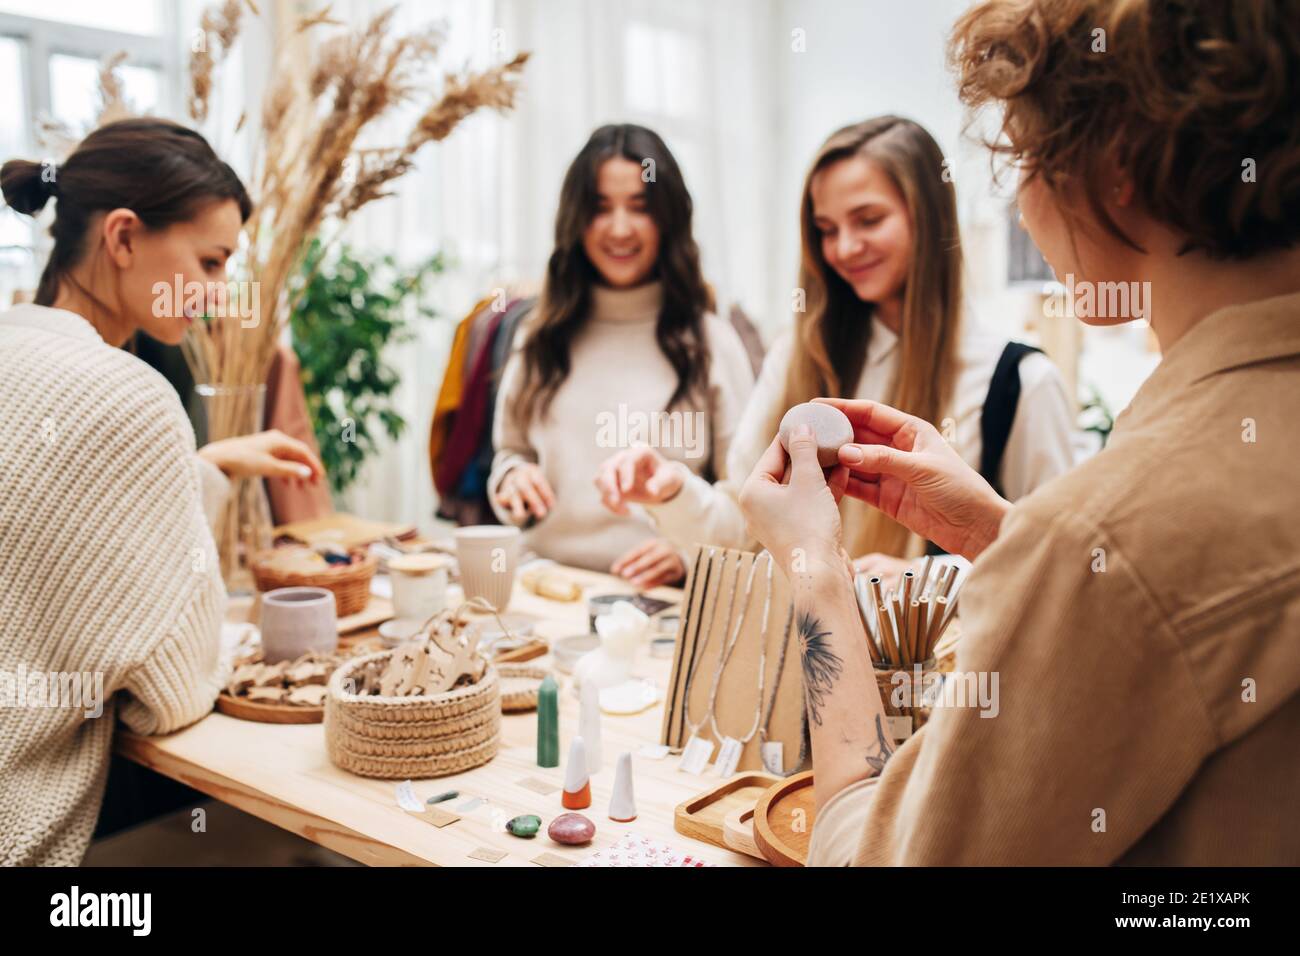 Quatre femmes en magasin écologique de cueillette et de discuter divers cosmétiques produits Banque D'Images